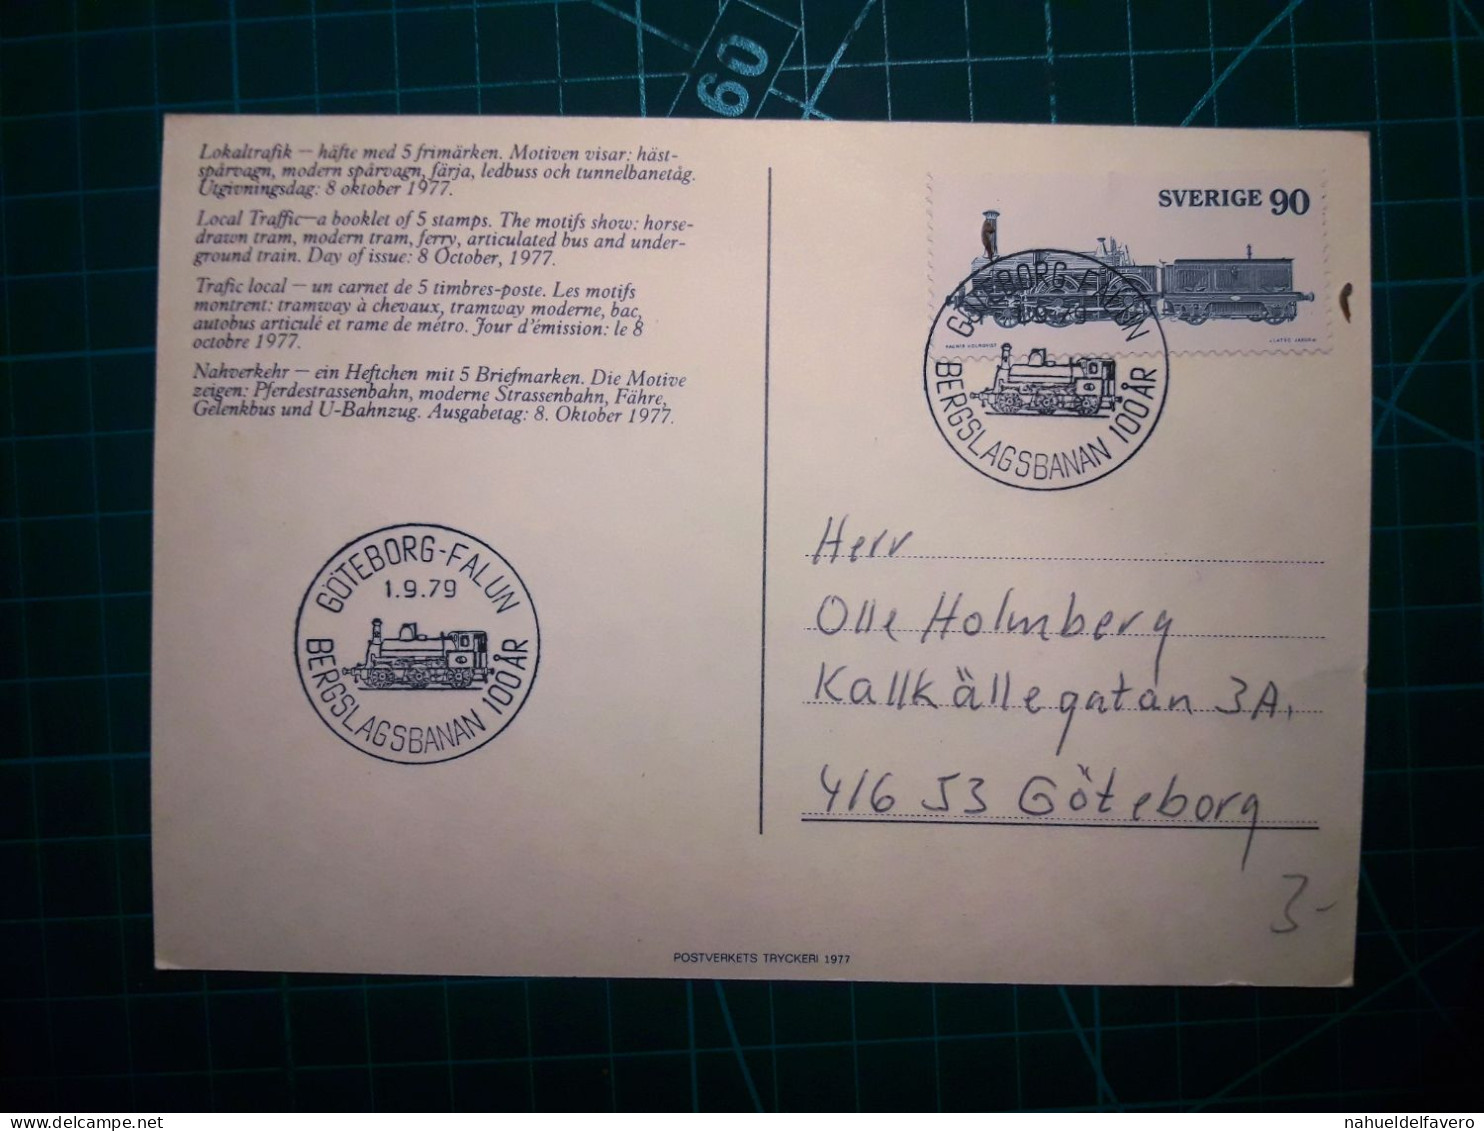 SVERIGE, Carte Postale Ferroviaire Circulant Avec Un Cachet Spécial. Timbre-poste Locomotive, Trains. Années 1970. - Treinen